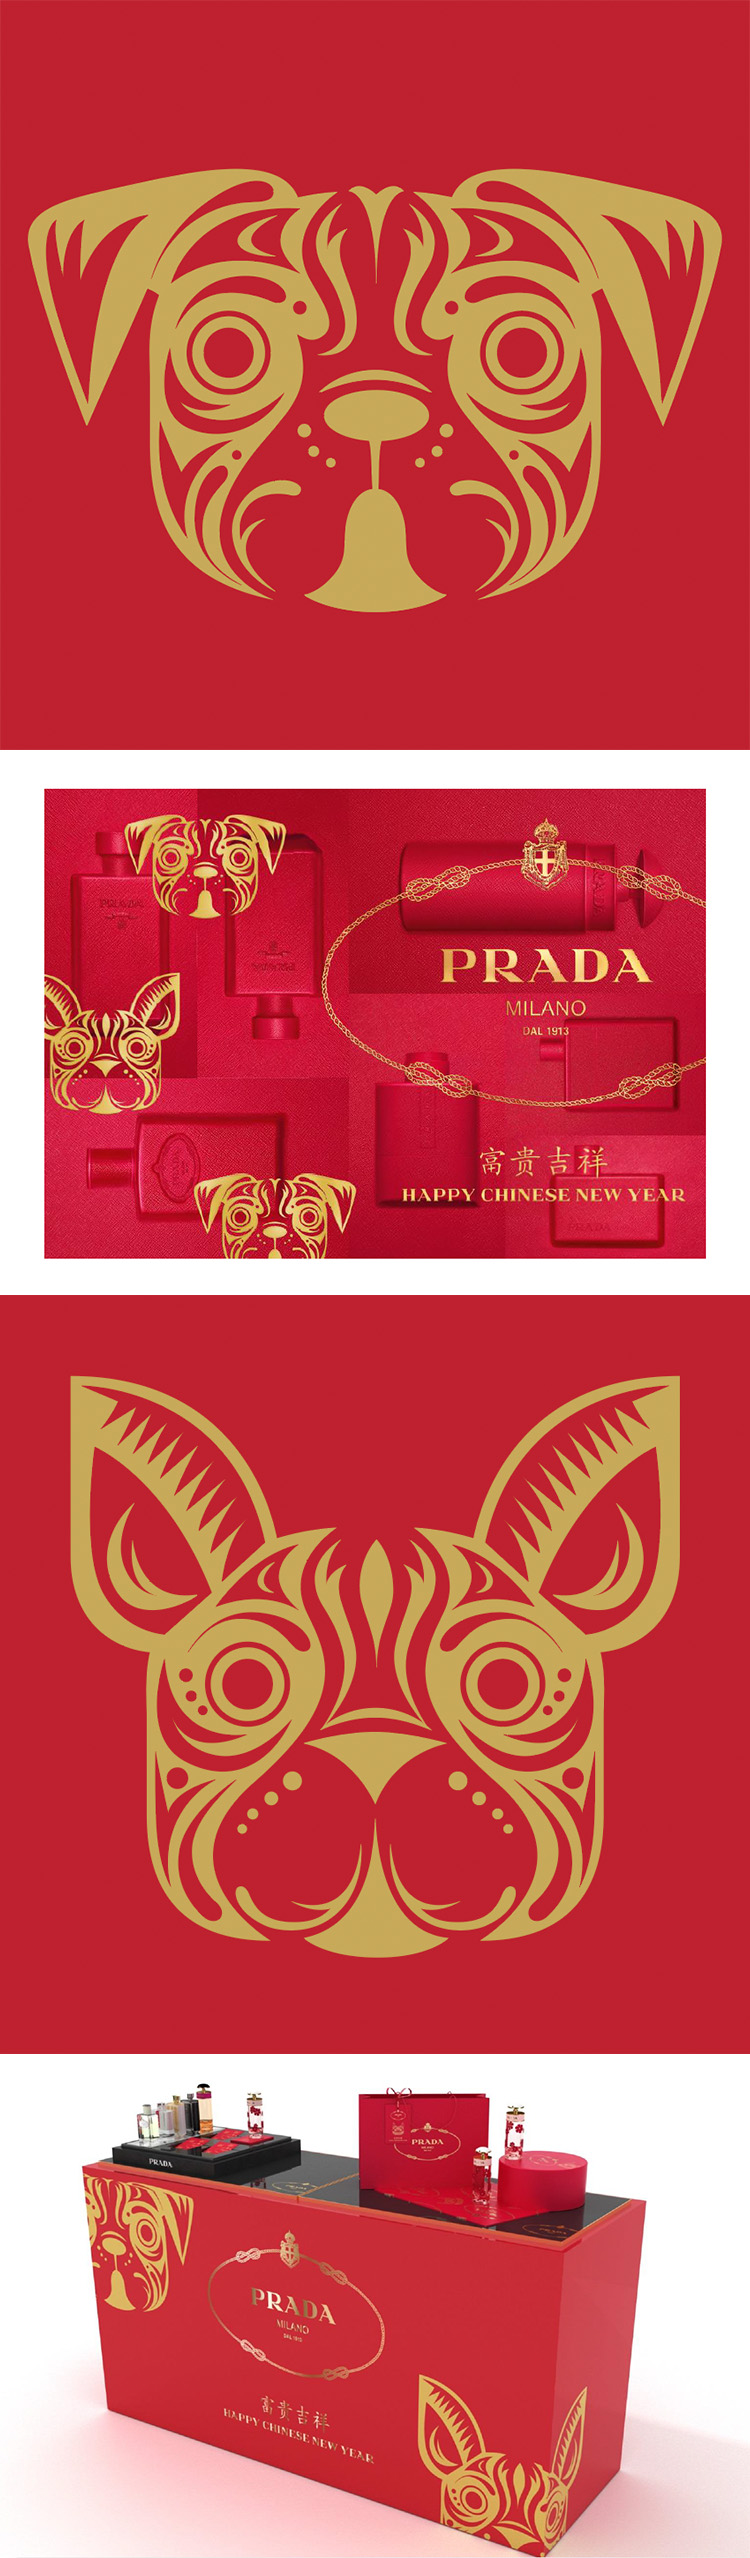 PRADA Lunar New Year Campaign 